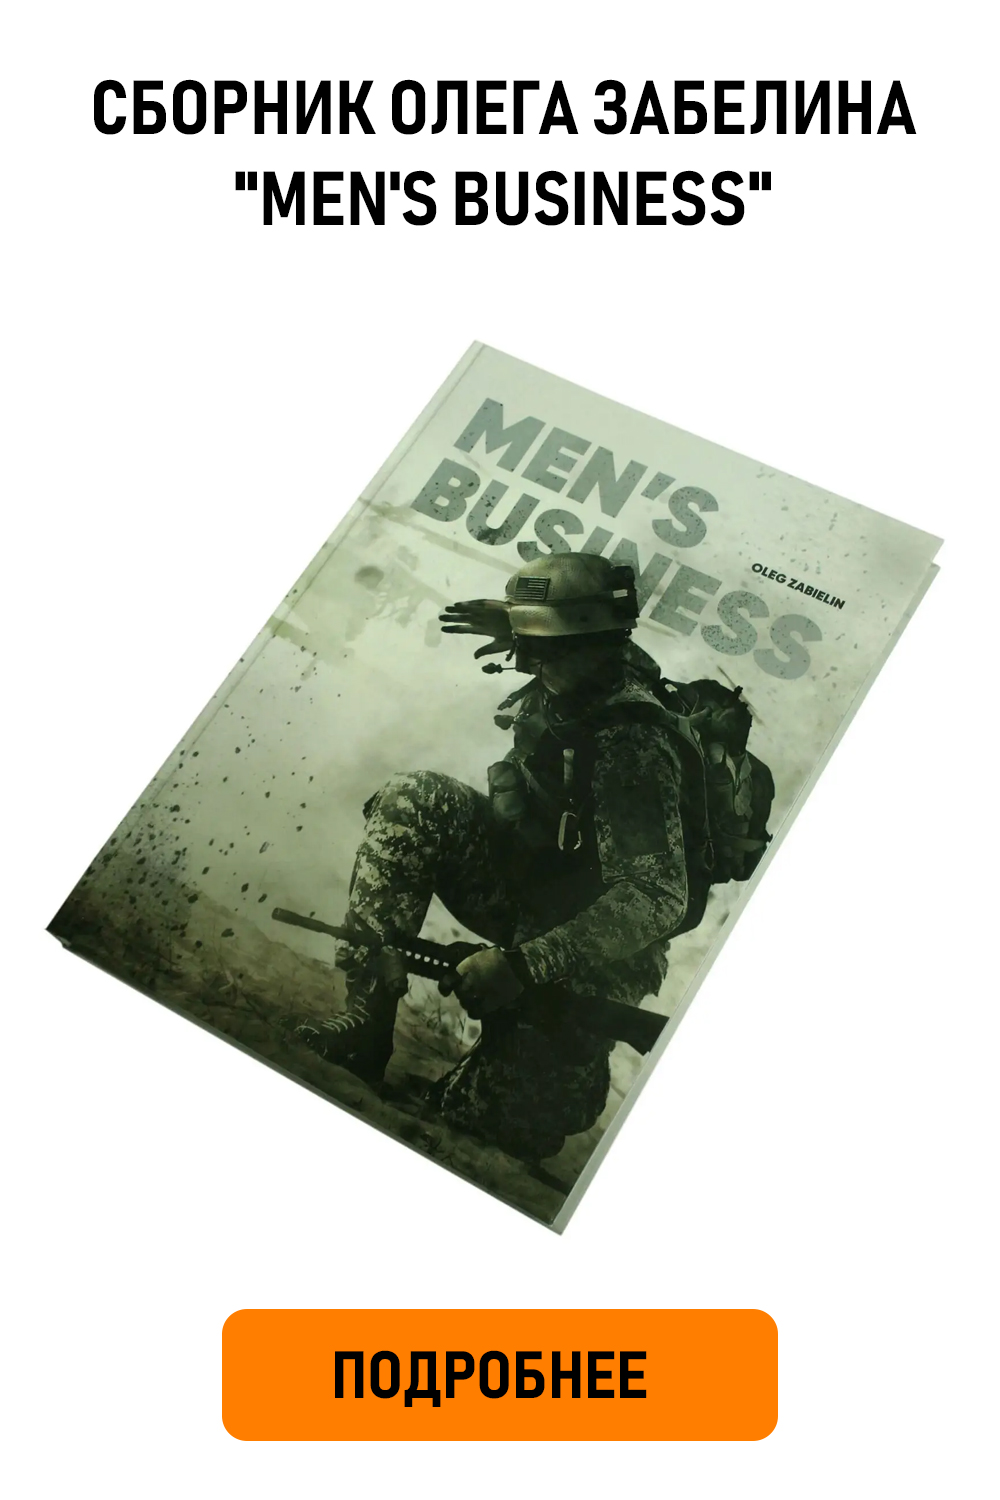 Сборник авторских работ художественной военной фотографии Олега Забелина "Men's Business"